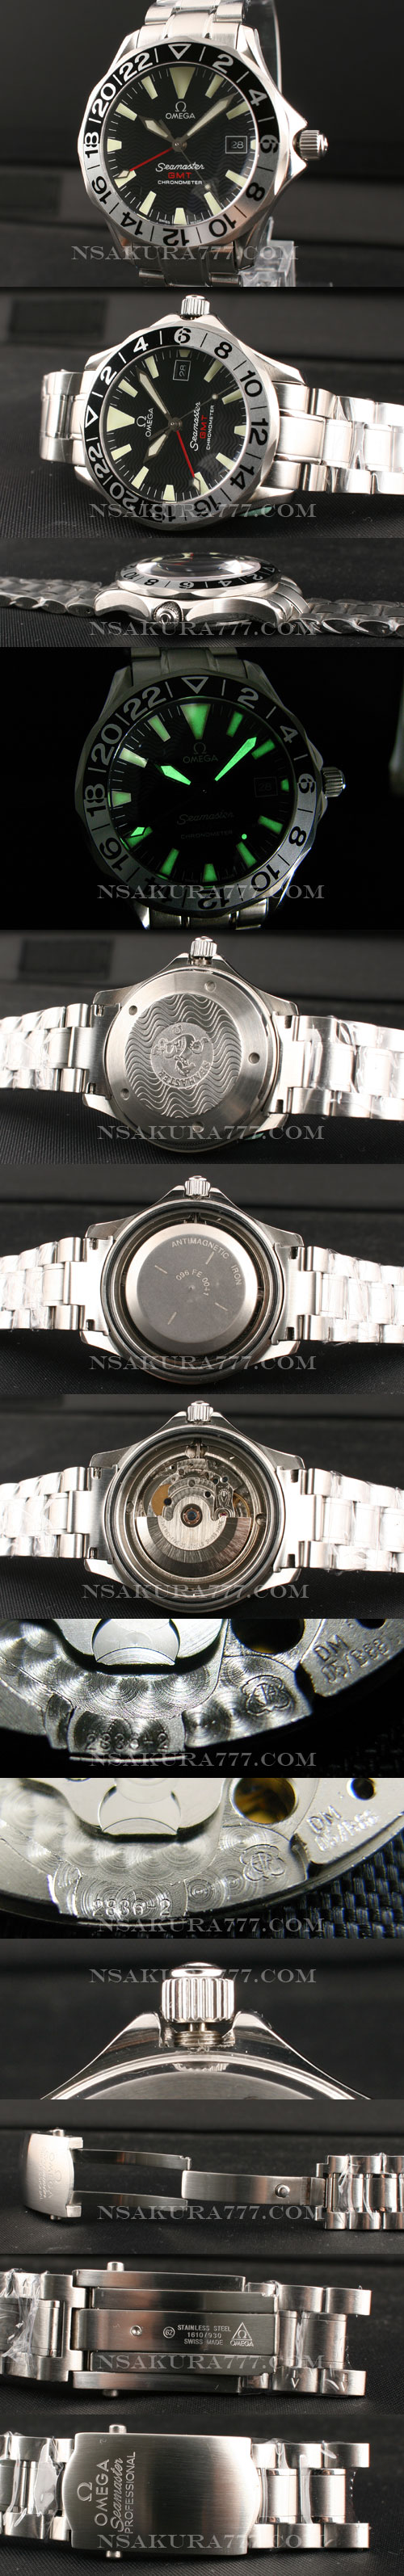 本物と区分けがつかないオメガシーマスター黒文字盤機械式腕時計